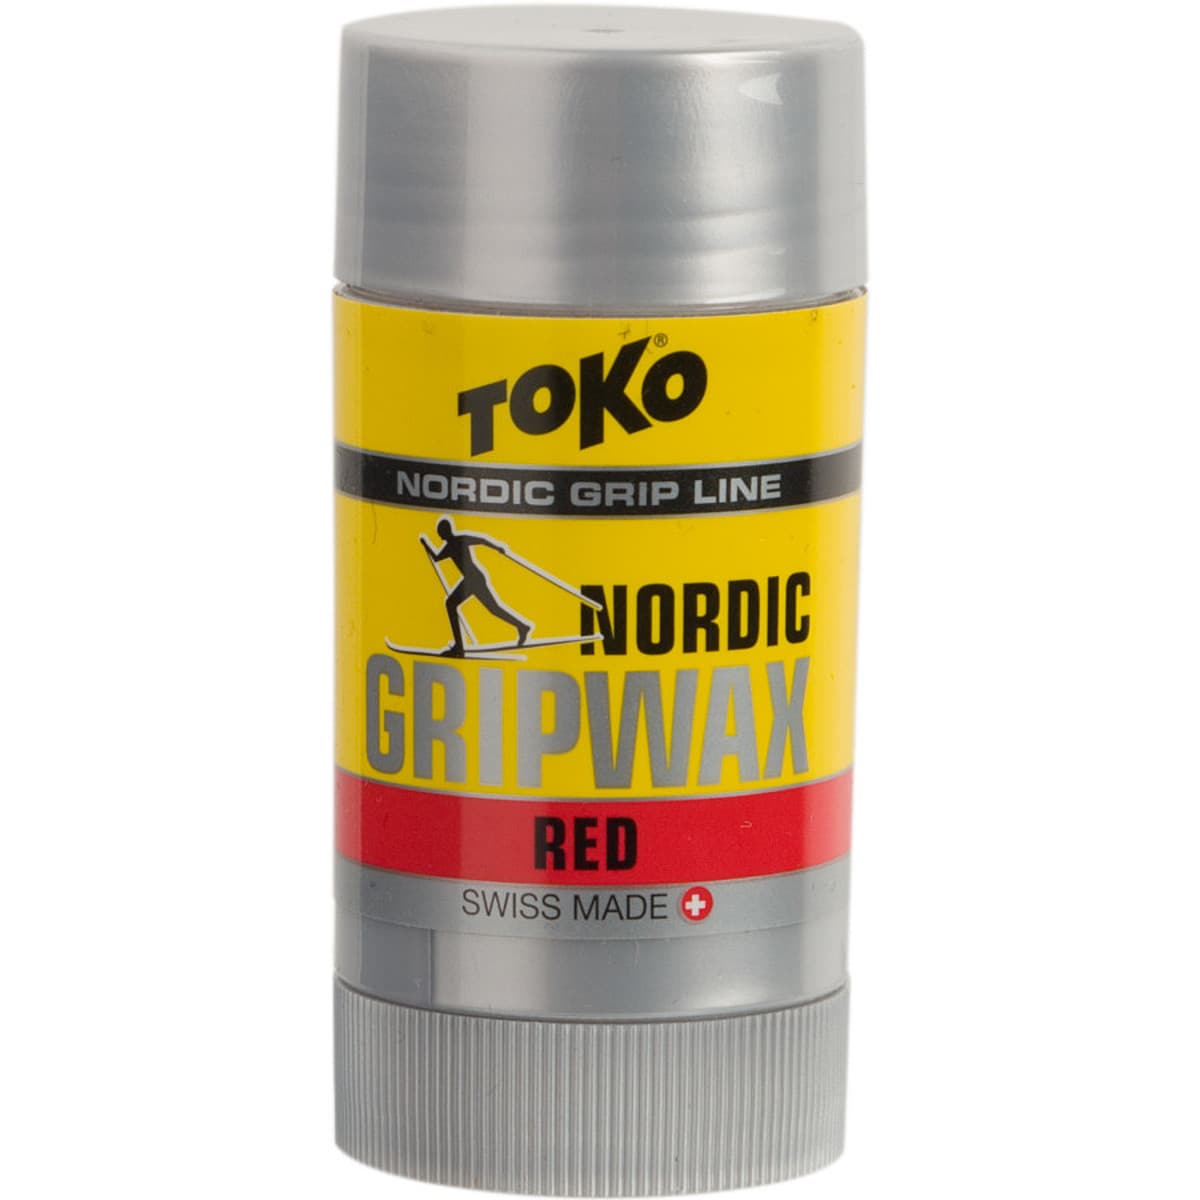 Toko Nordic Grip Wax Red